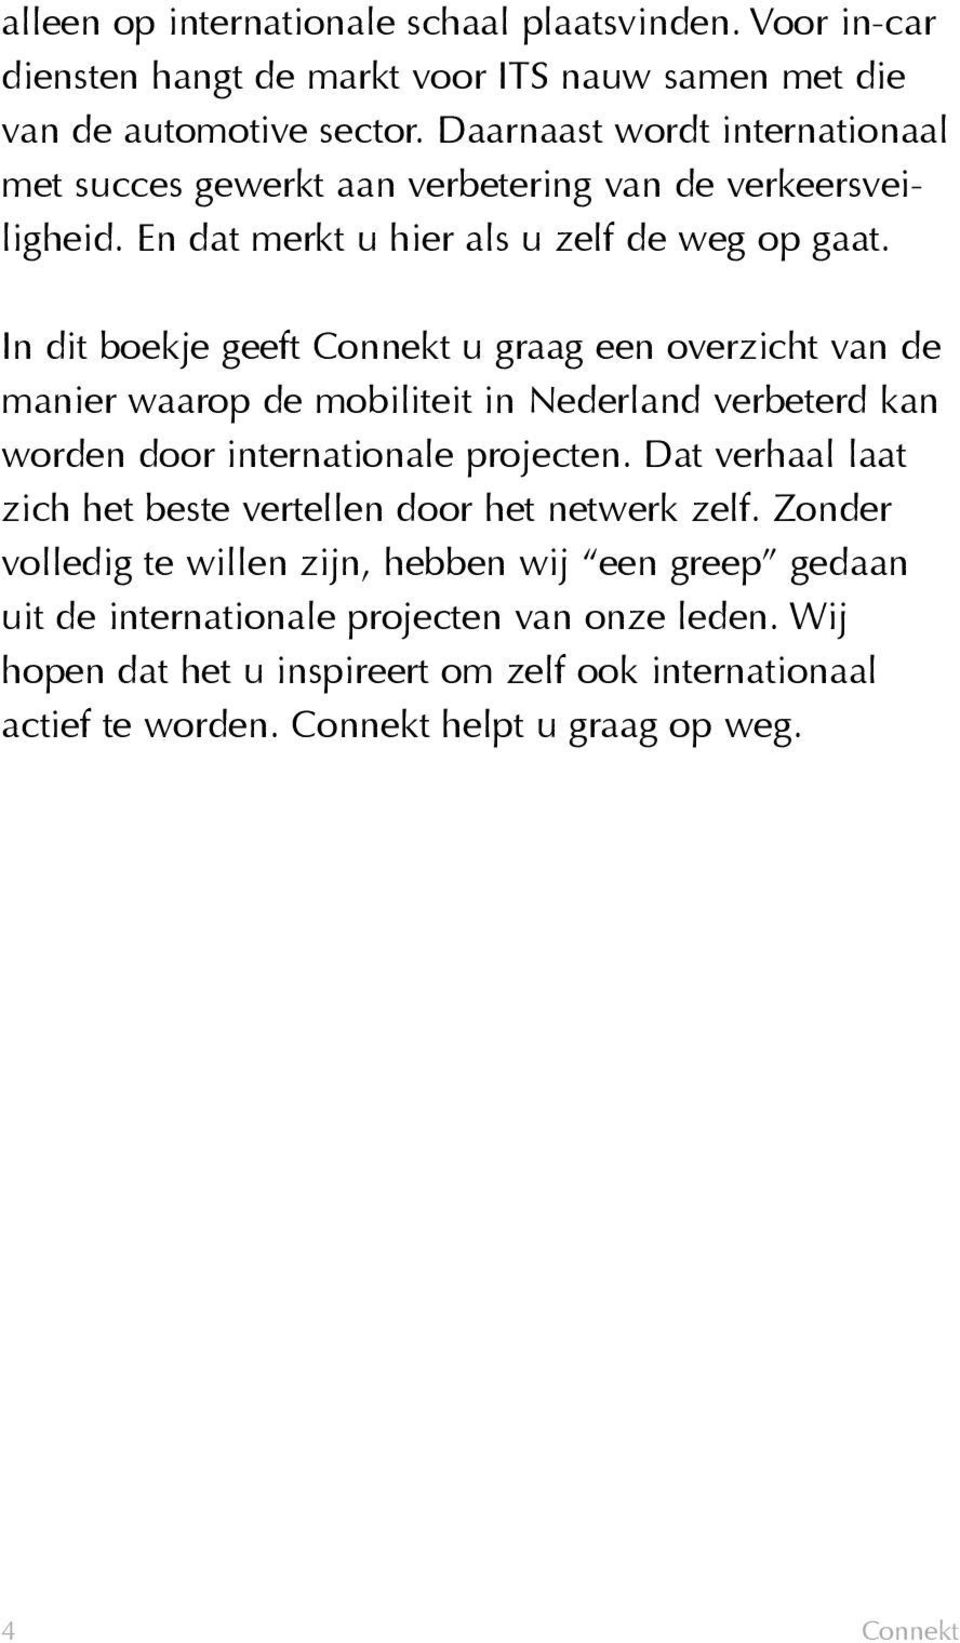 In dit boekje geeft Connekt u graag een overzicht van de manier waarop de mobiliteit in Nederland verbeterd kan worden door internationale projecten.